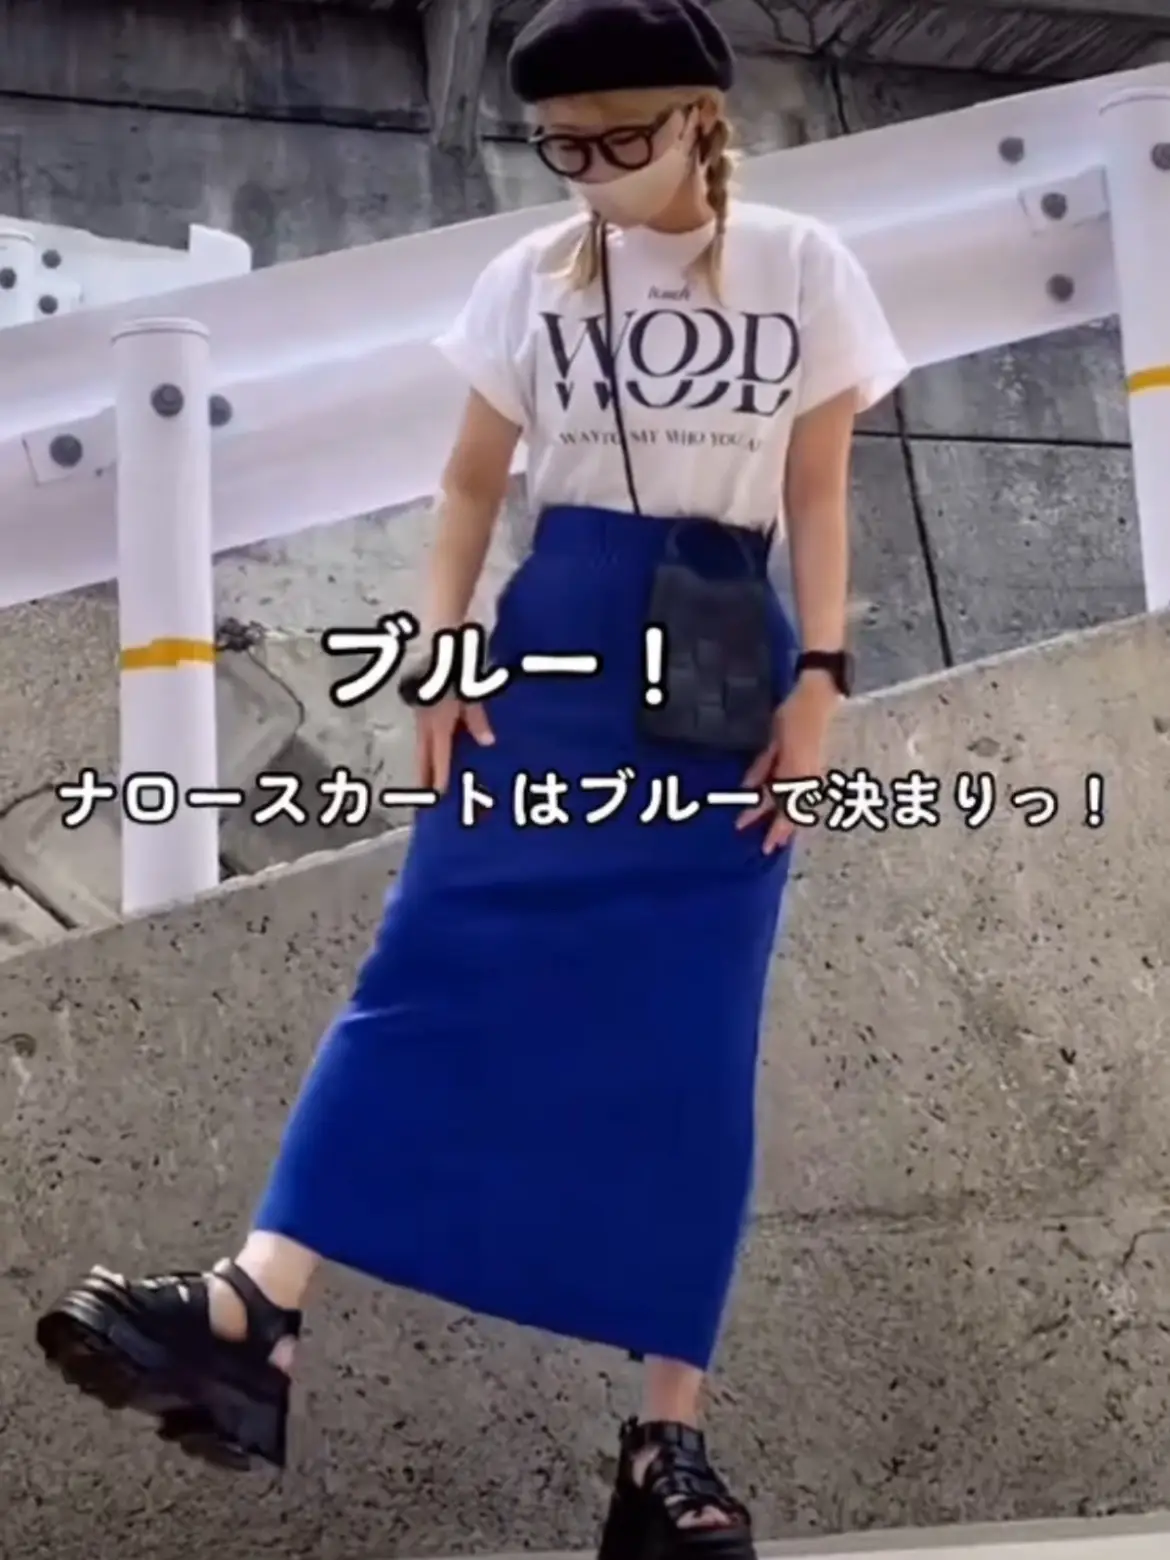 日本販売店 リブナロー ミディスカート - スカート